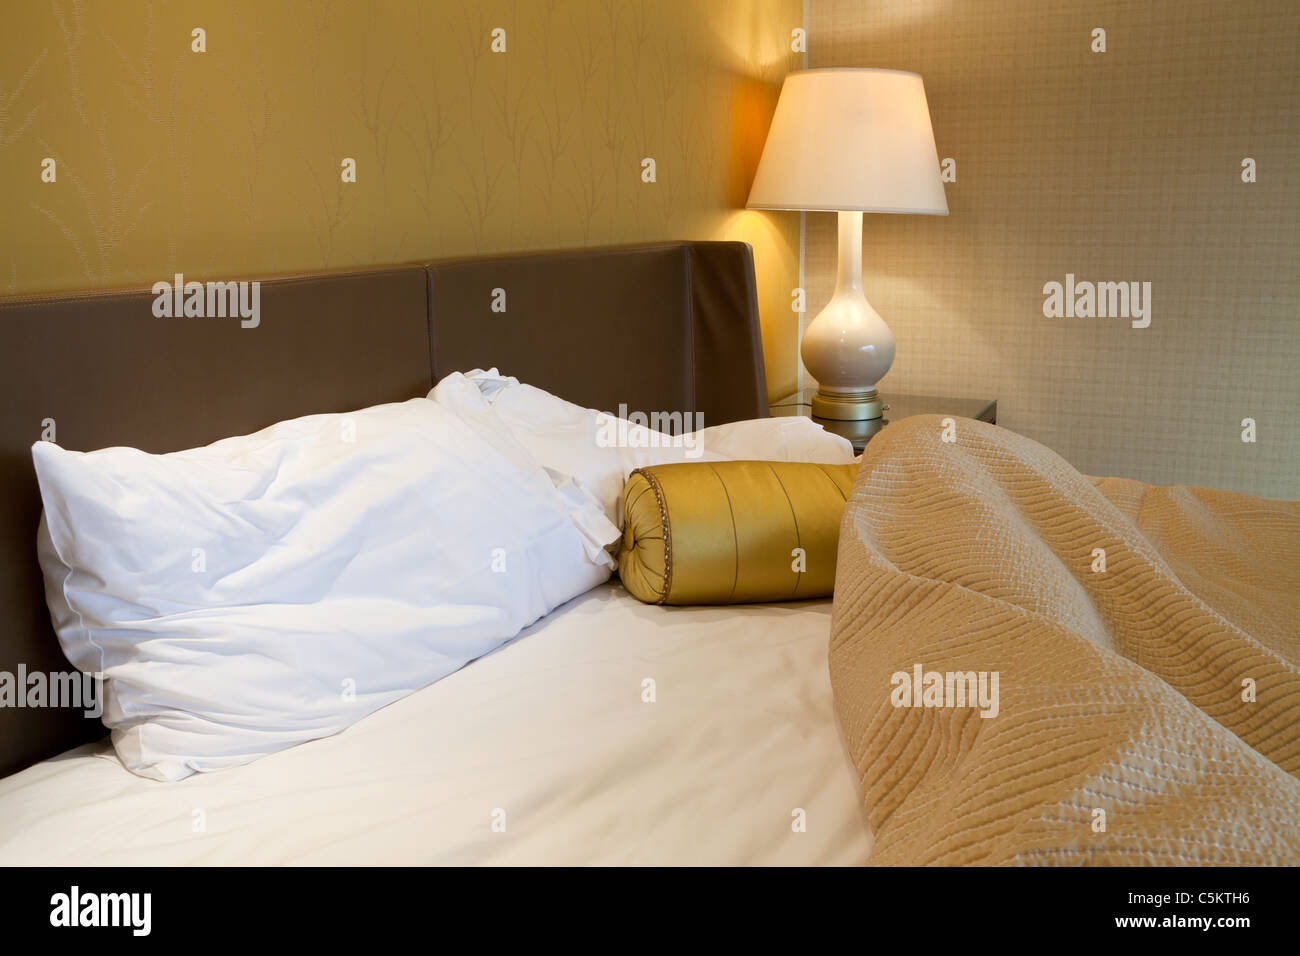 Confuso letto king size con cuscino e copripiumino Foto Stock